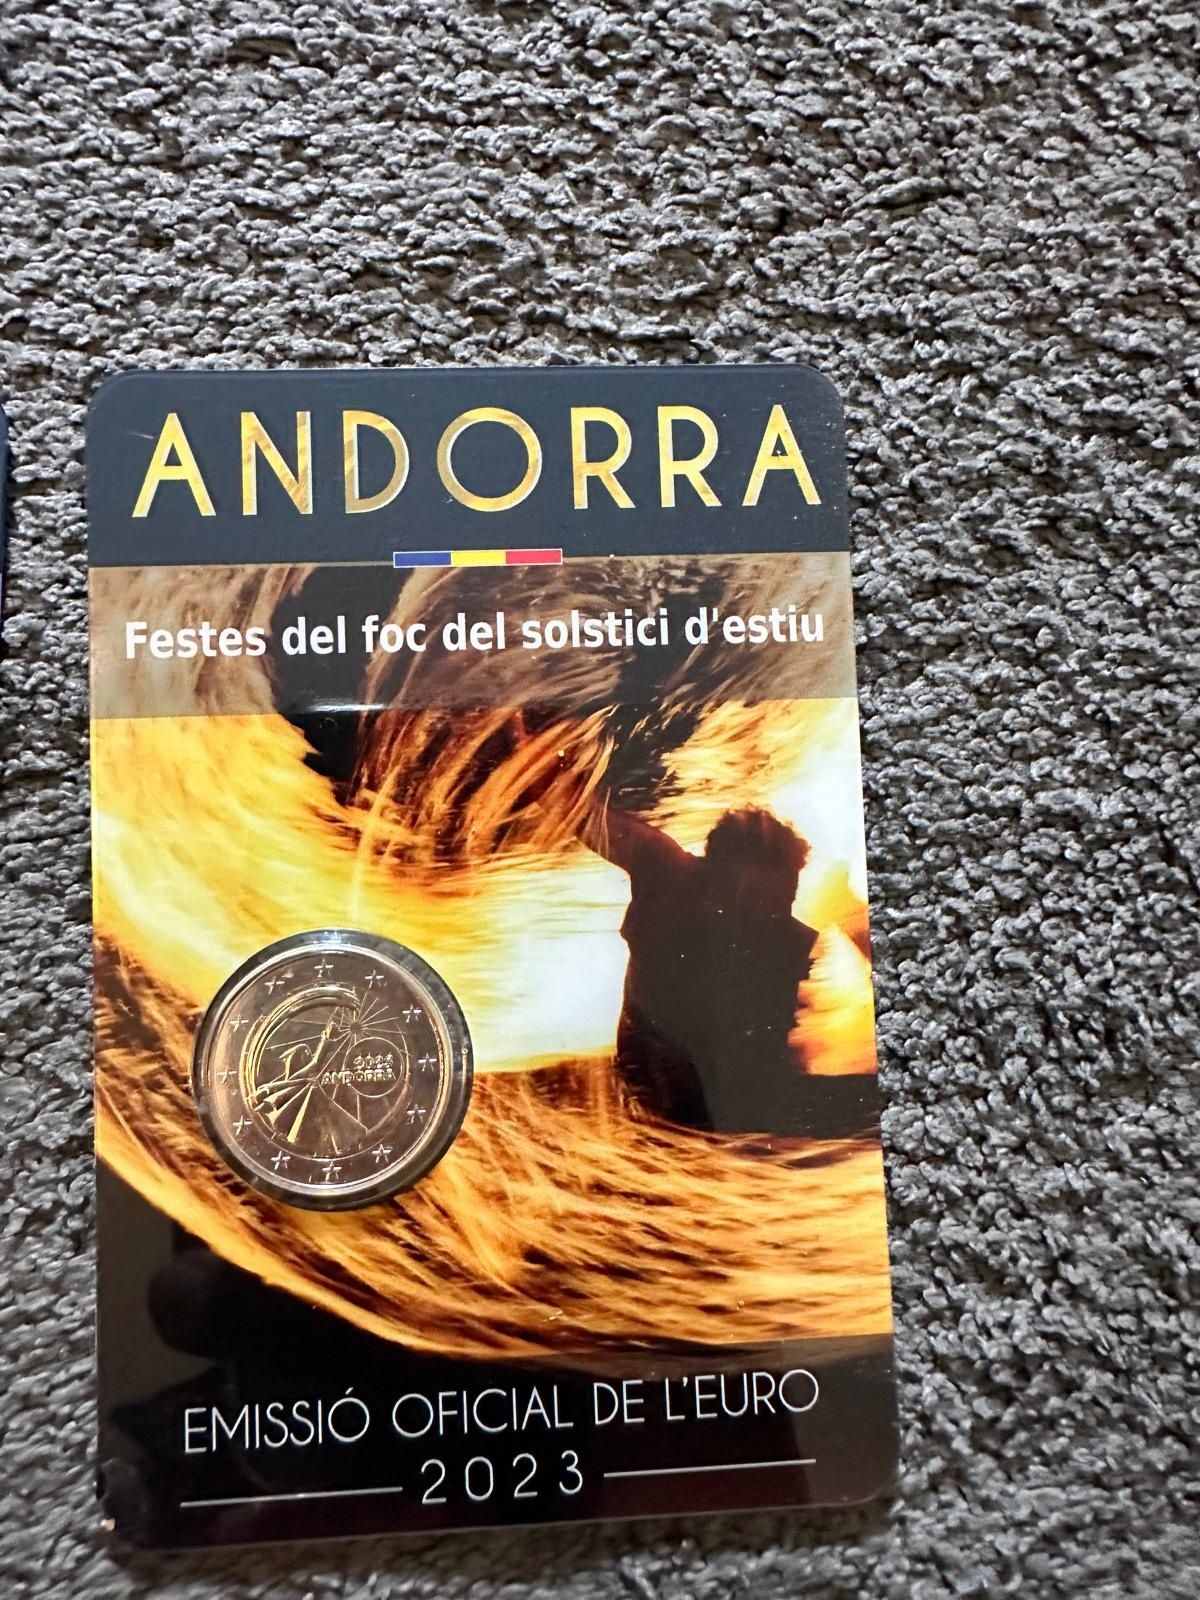 Par Andorra 2023
Festividades do solstício de verão +30 anos da entrad